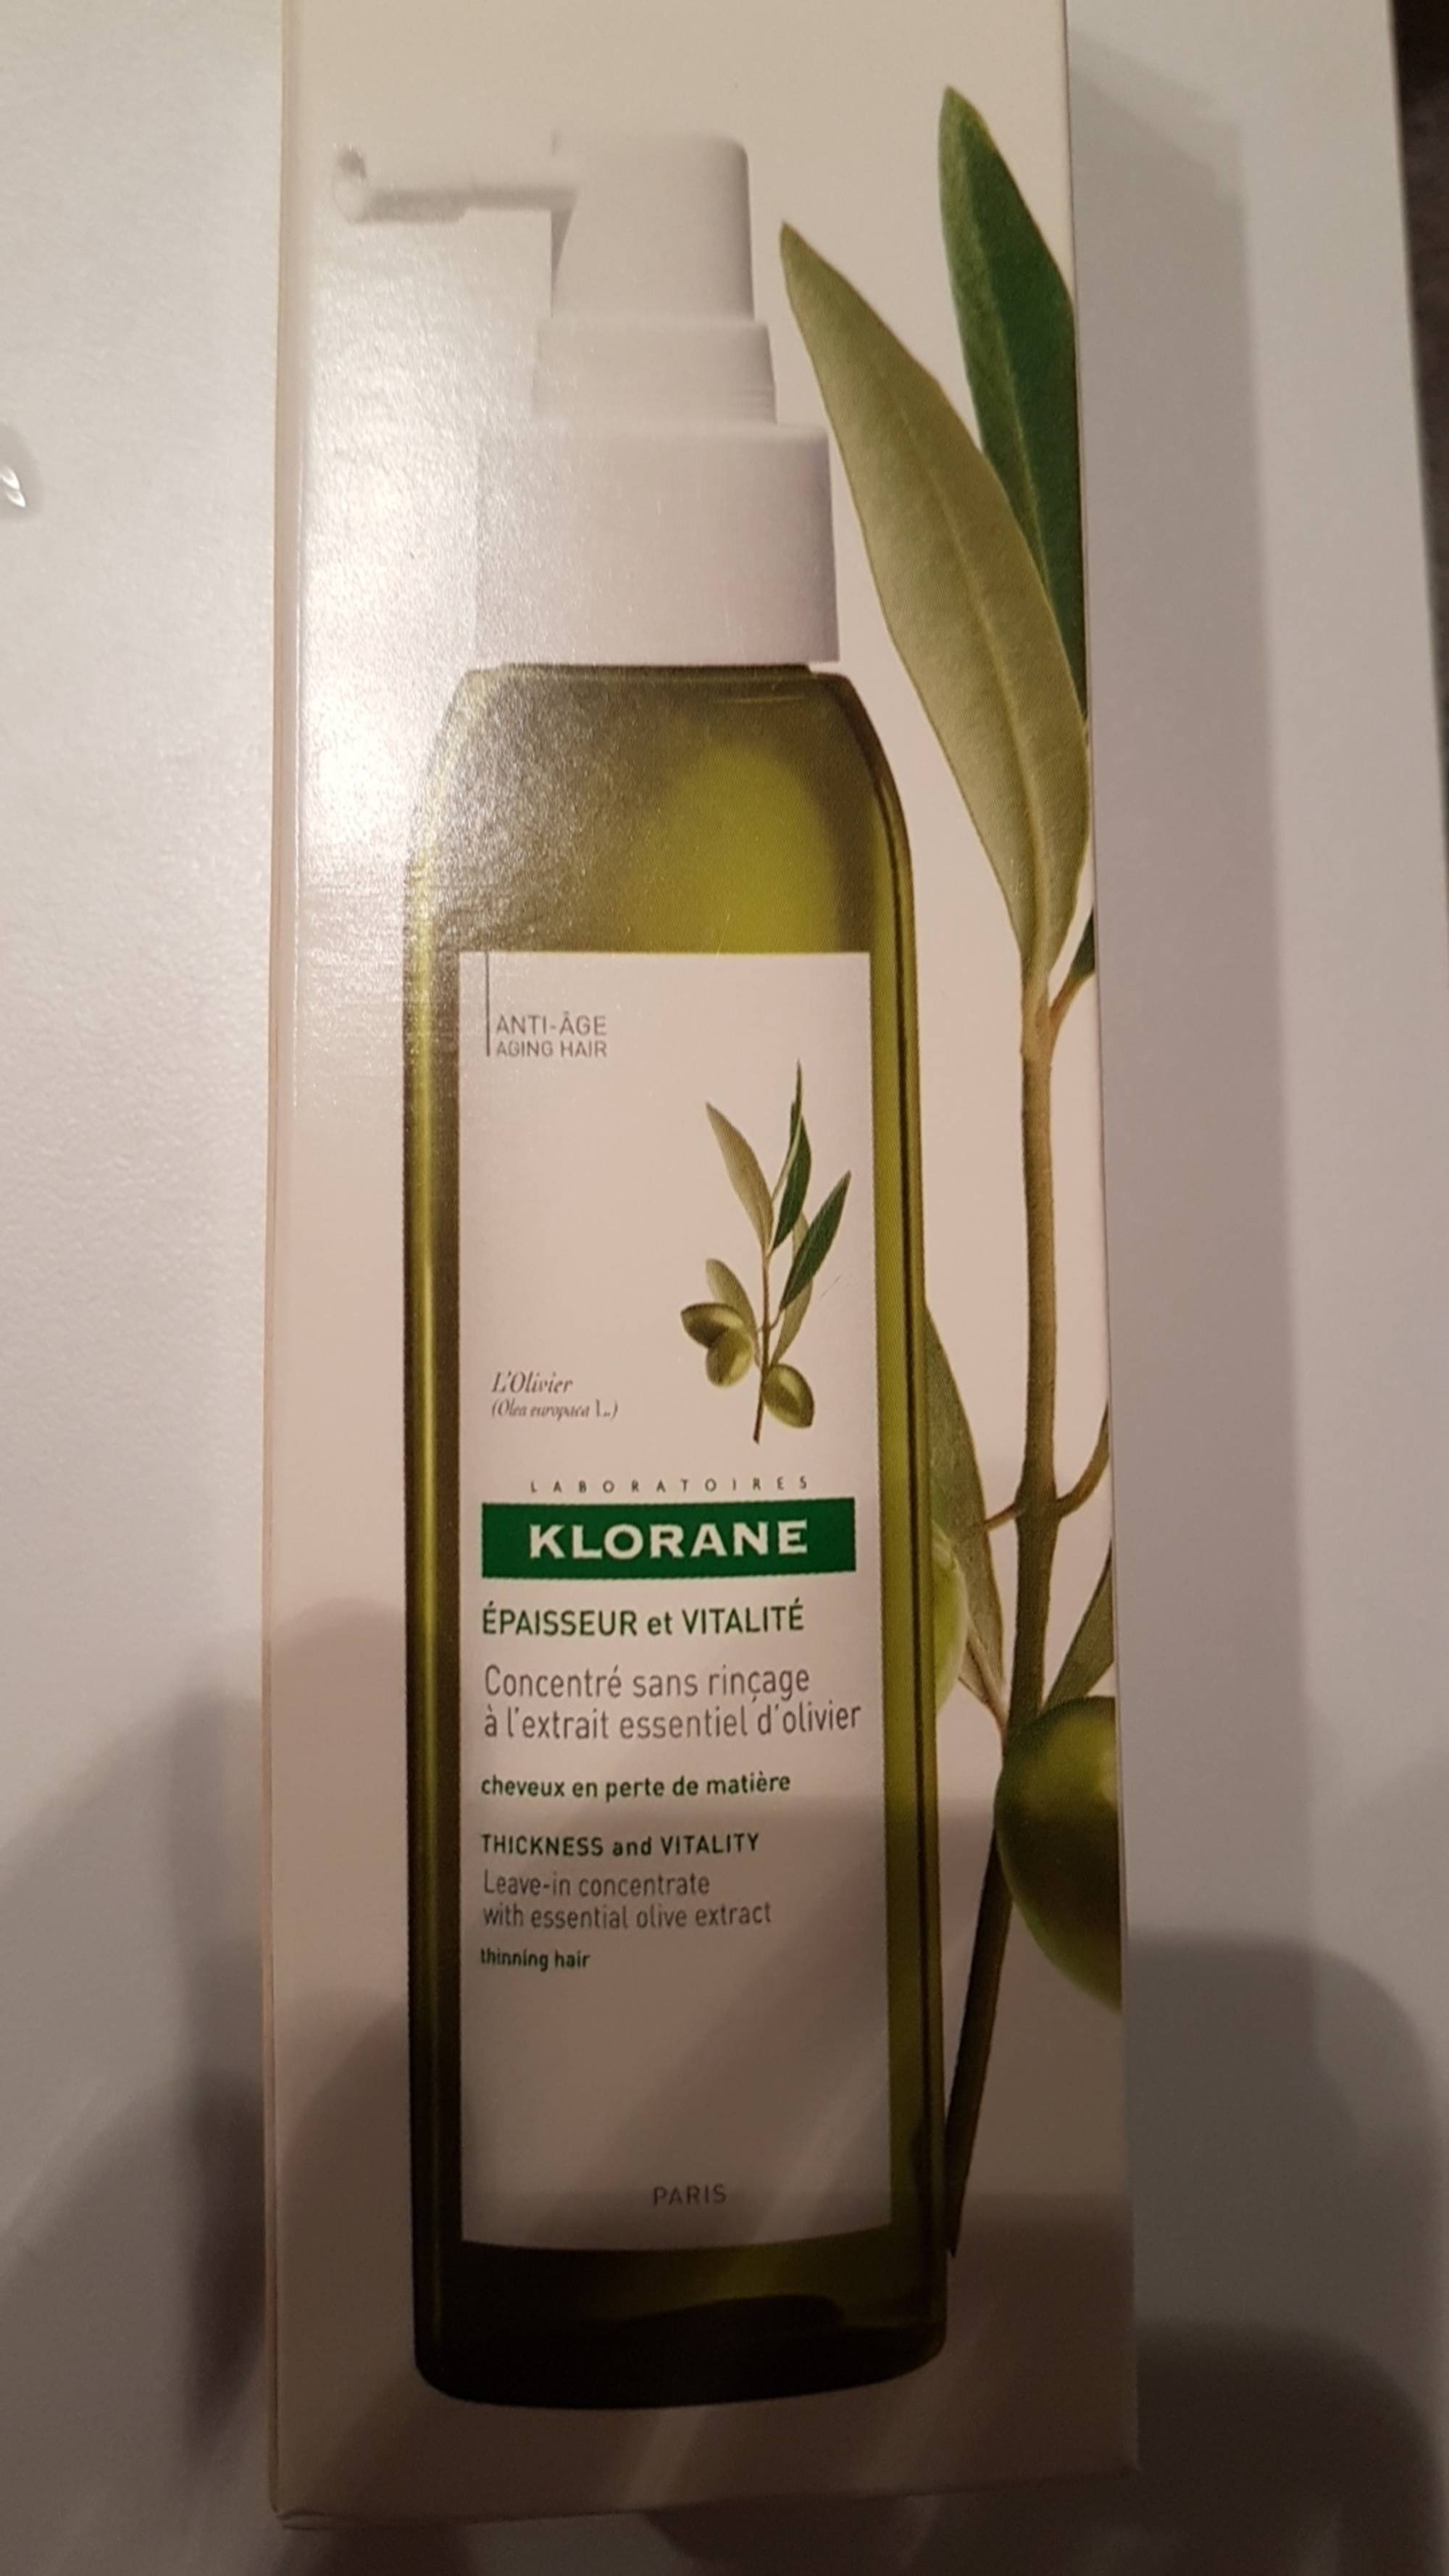 KLORANE - L'Olivier - Concentré sans rinçage à l'extrait essentiel d'olivier